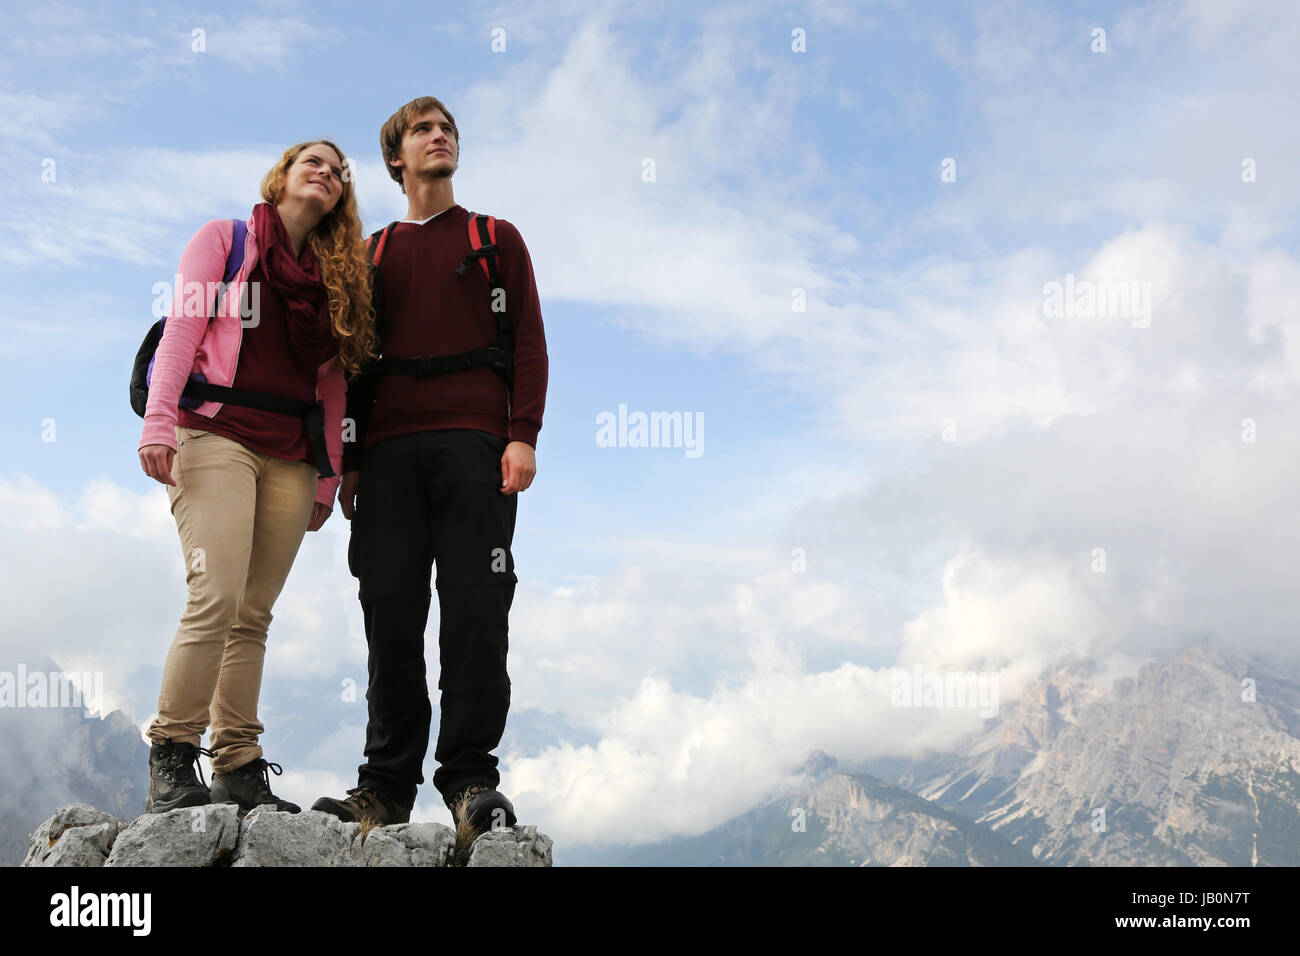 Junge Bergsteiger stehen auf einem Berggipfel und genießen die Freiheit und ihren Erfolg Stock Photo